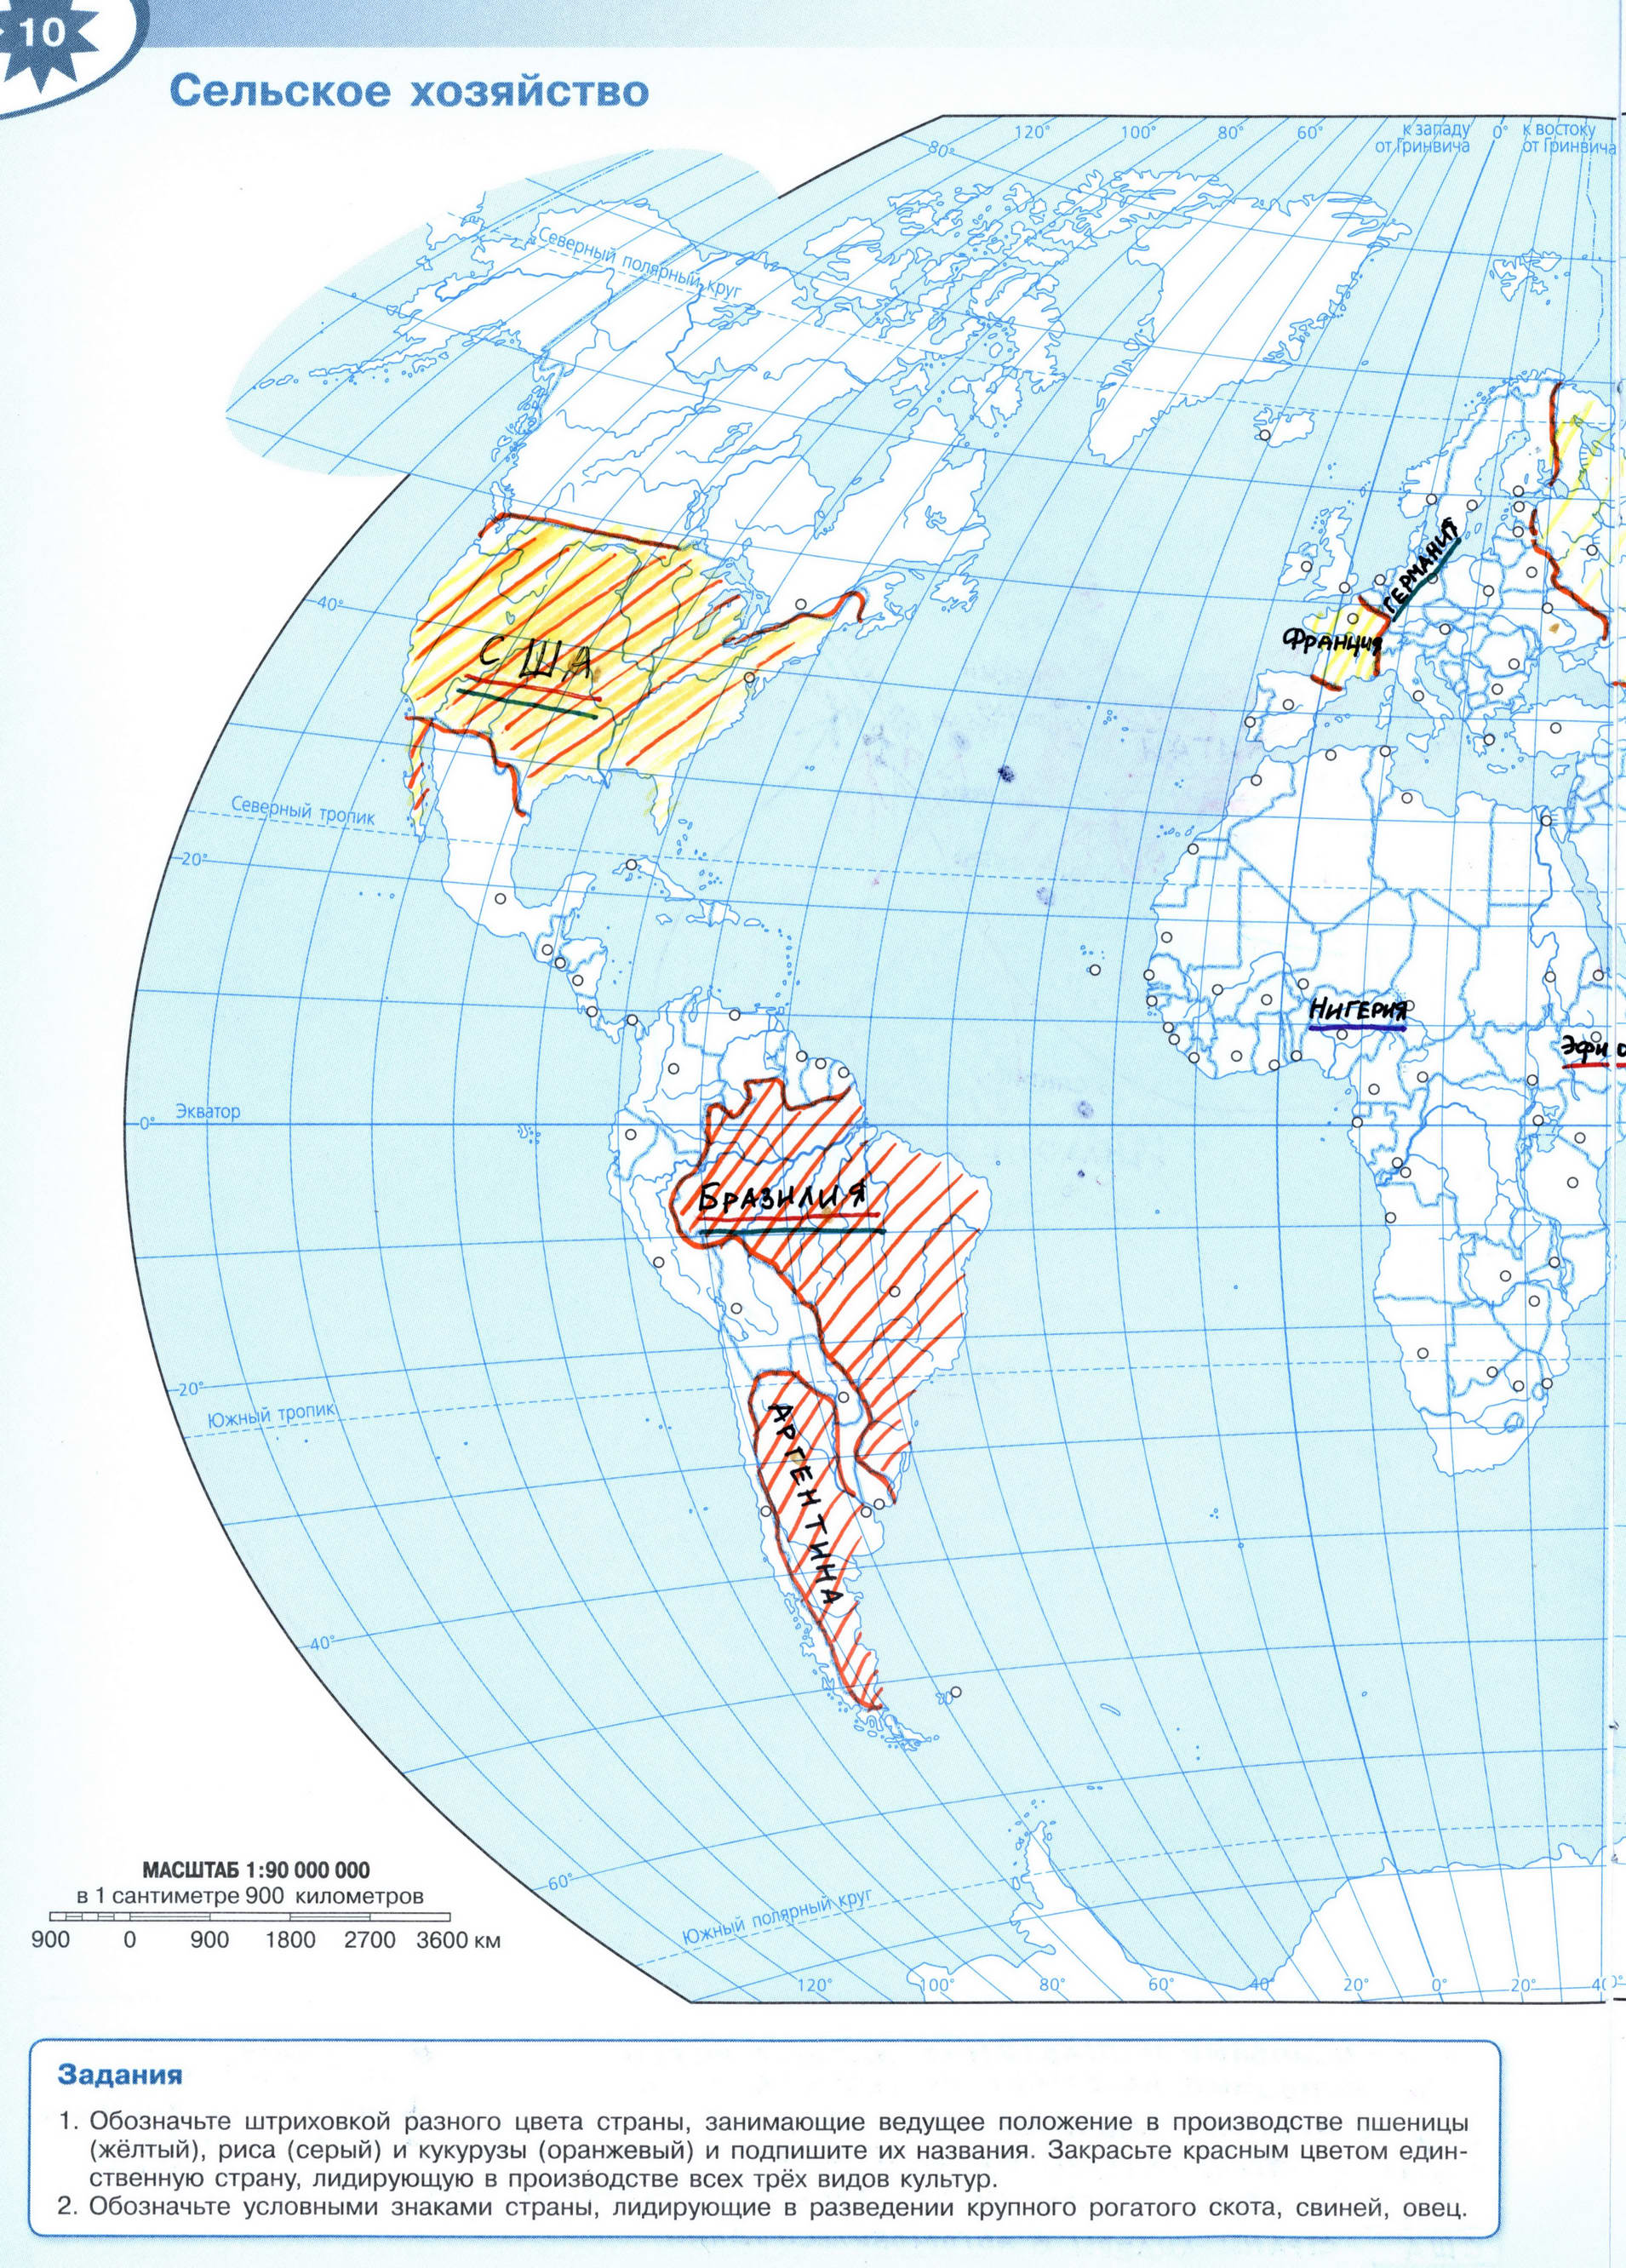 ГДЗ Сельское хозяйство мира контурная карта 10-11